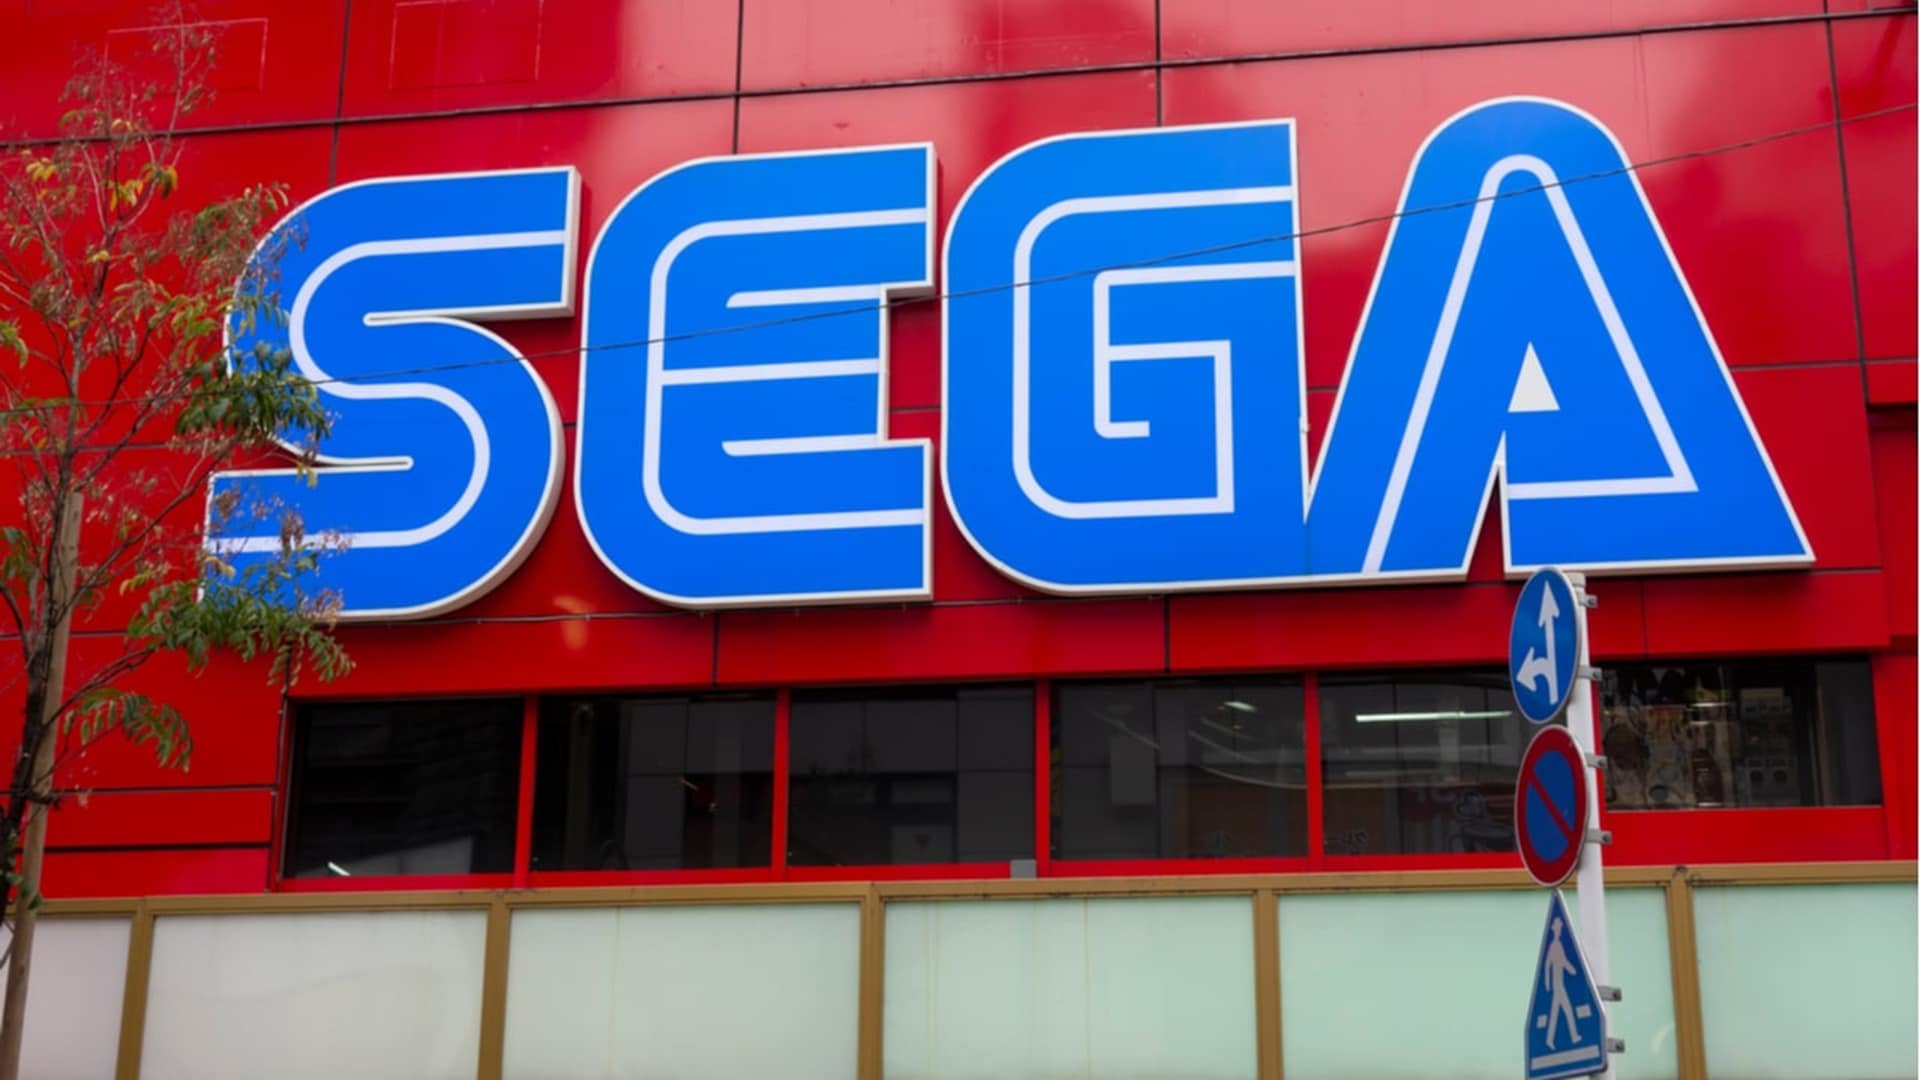 Sega seems to be planning its own gaming metaverse, GamersRD.